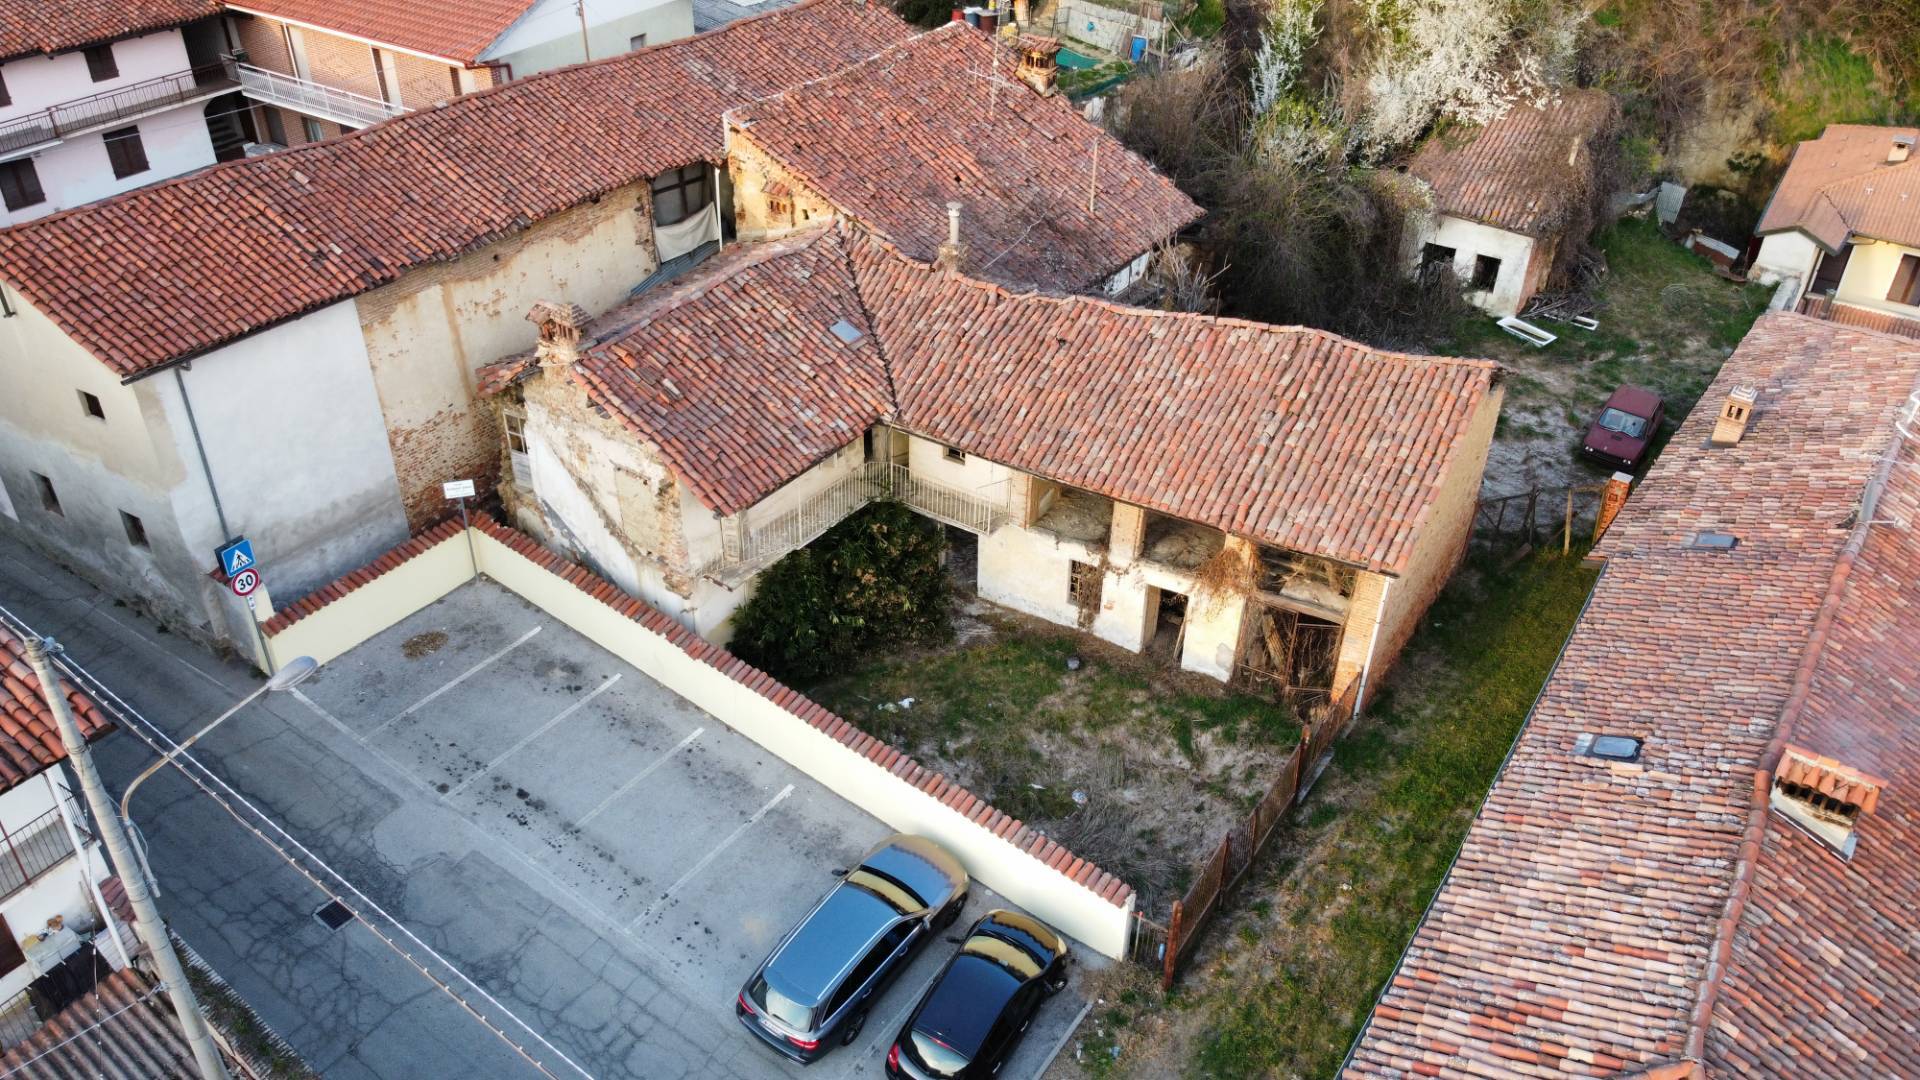 Rustico / Casale in vendita a Pocapaglia, 7 locali, prezzo € 30.000 | PortaleAgenzieImmobiliari.it